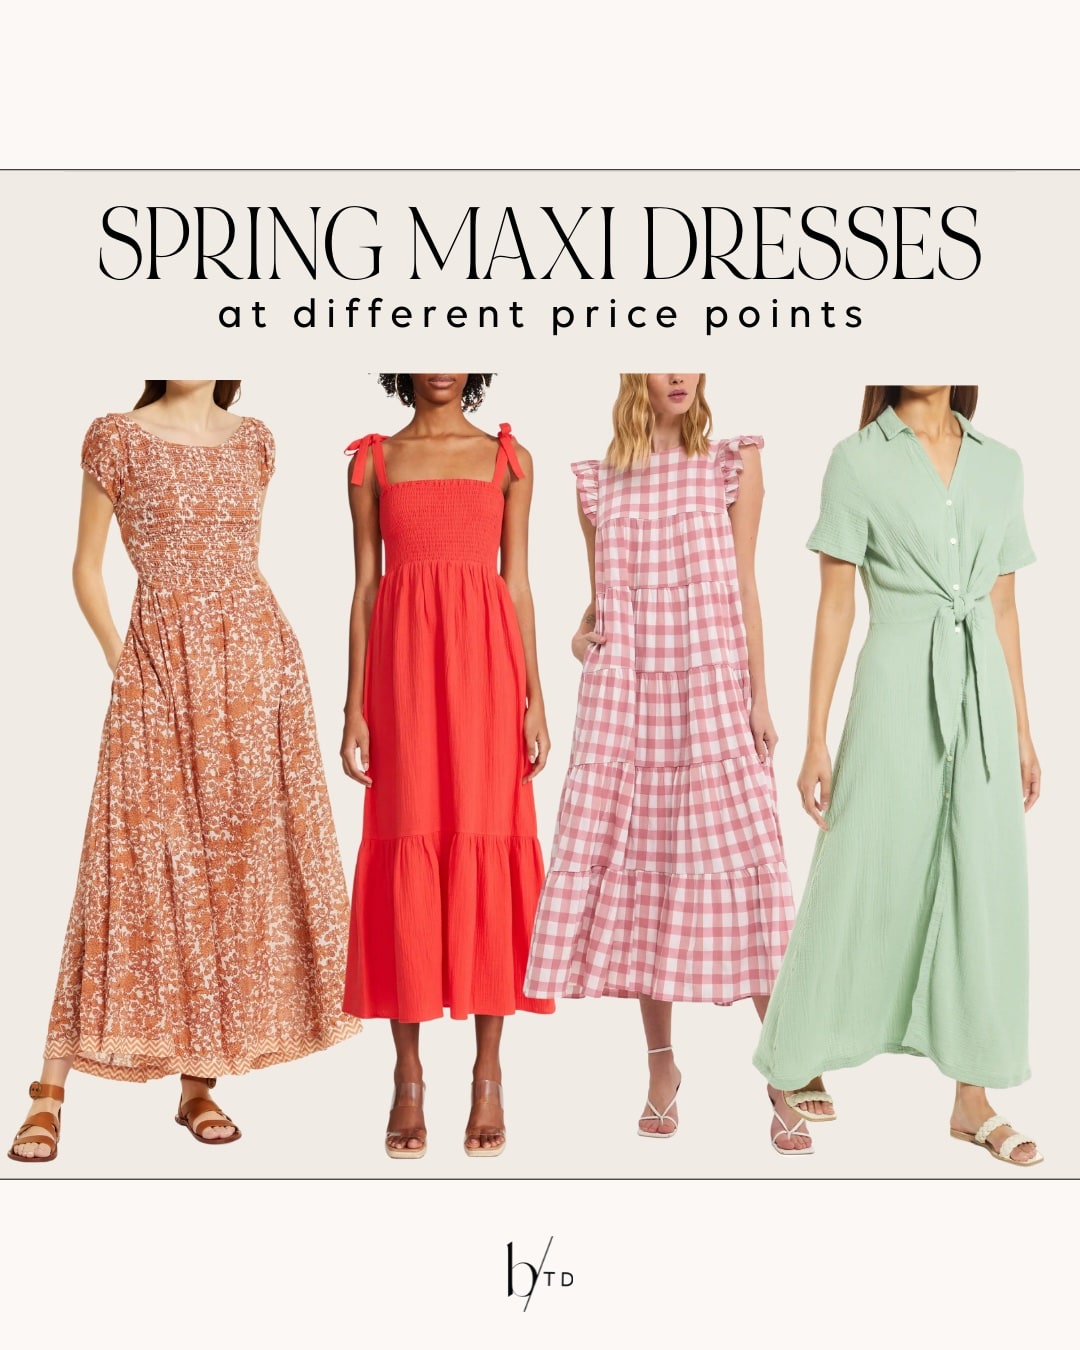 BRighton Butler spring maxi dresses